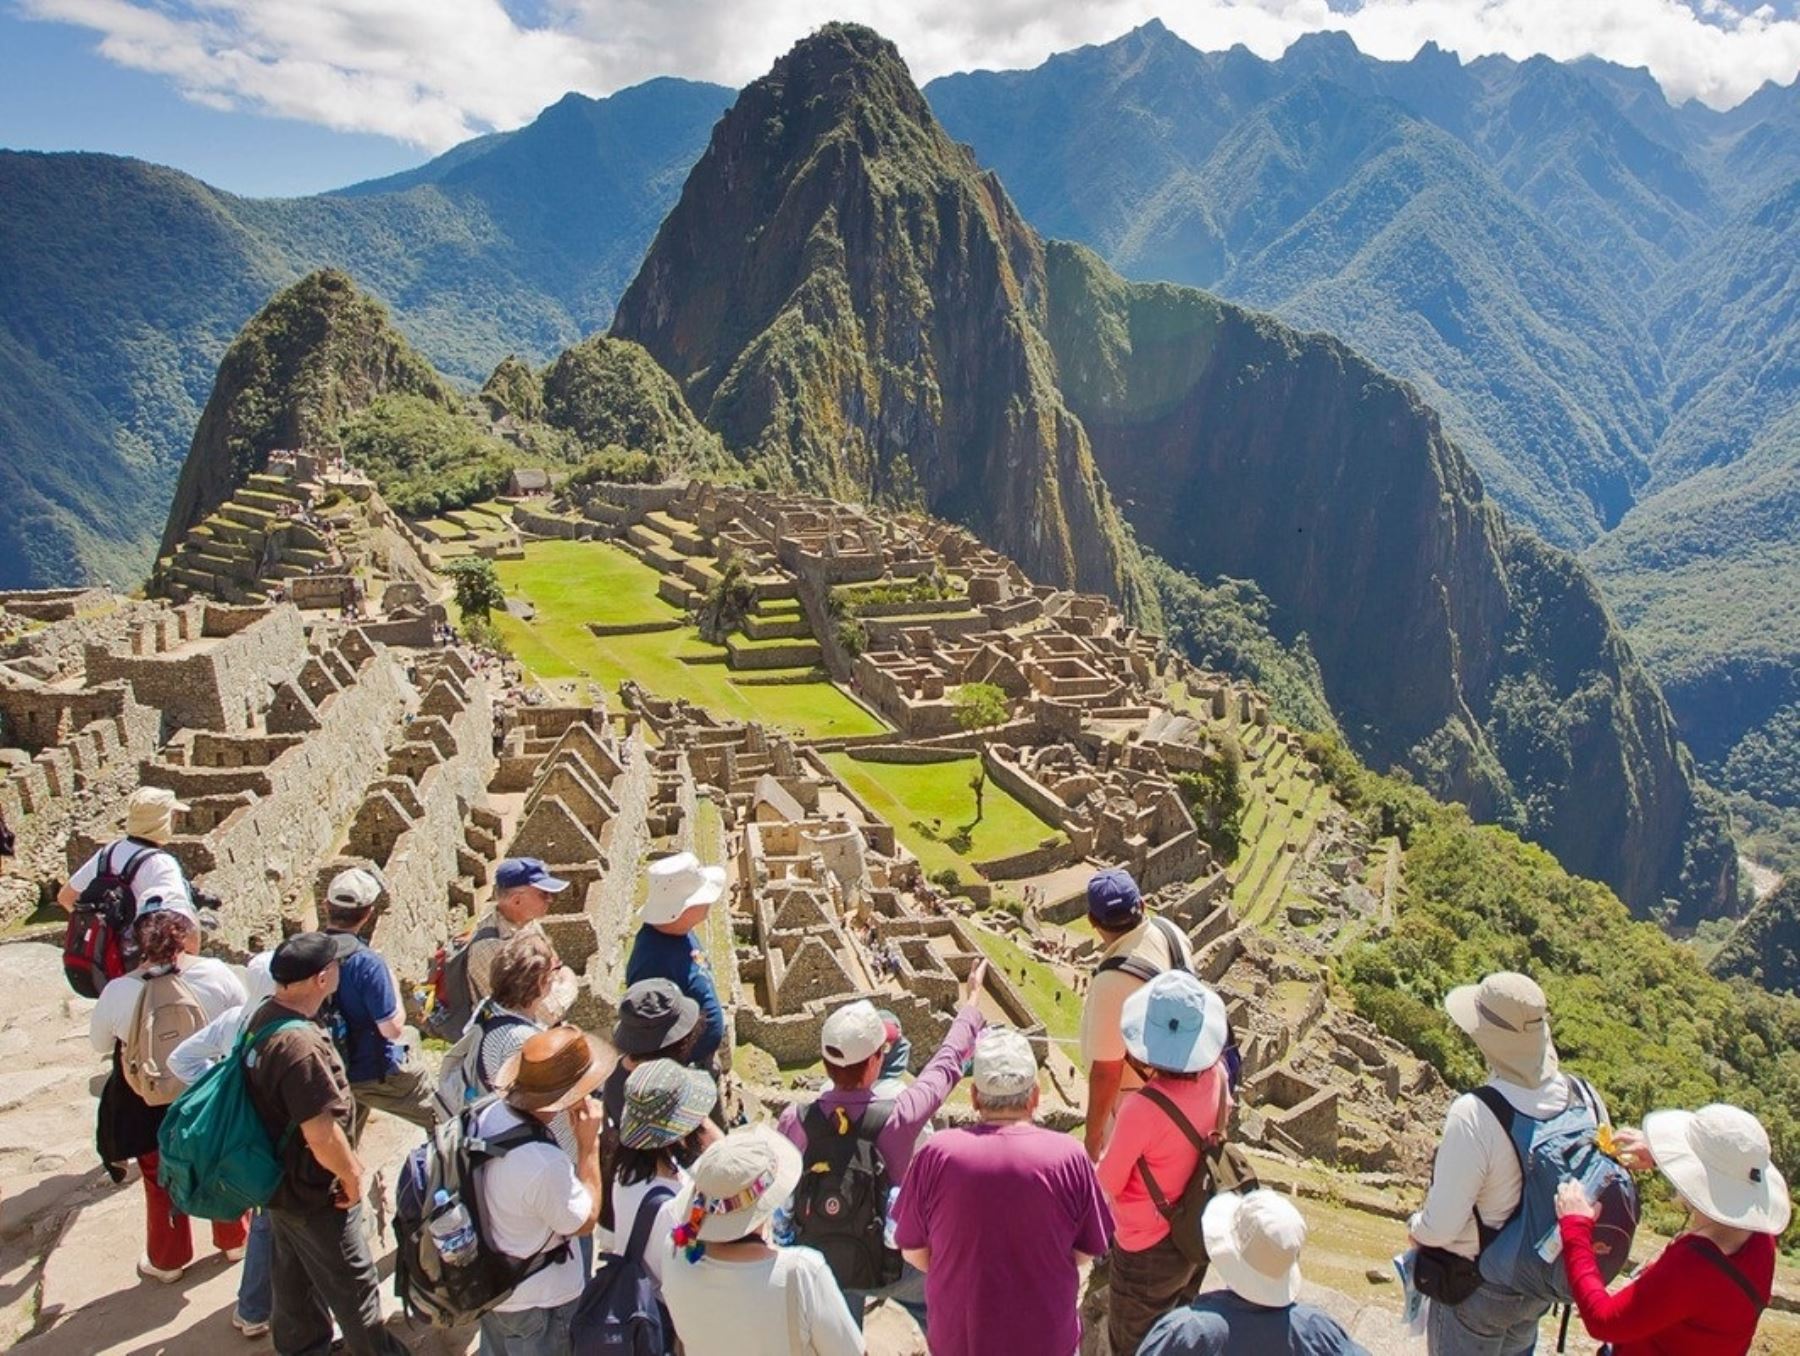 La ciudadela inca de Machu Picchu, Patrimonio de la Humanidad y maravilla mundial es uno de los atractivos turísticos que enorgullecen e identifican a los peruanos. ANDINA/Difusión